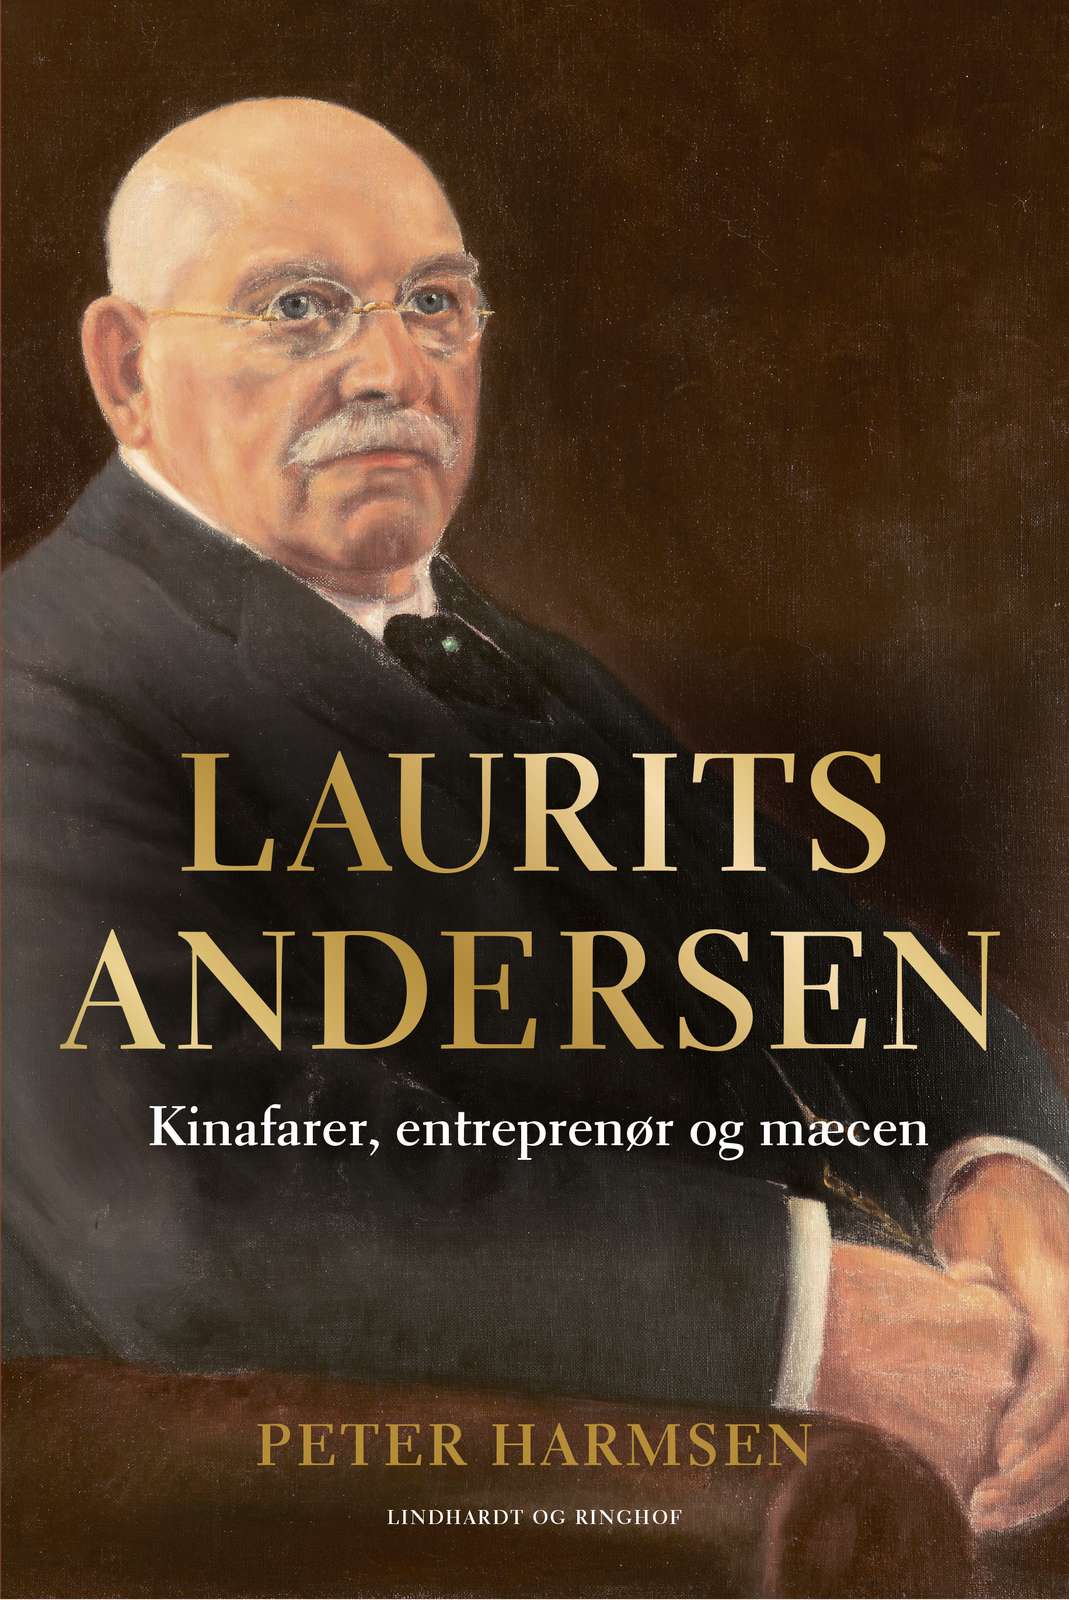 Laurits Andersen